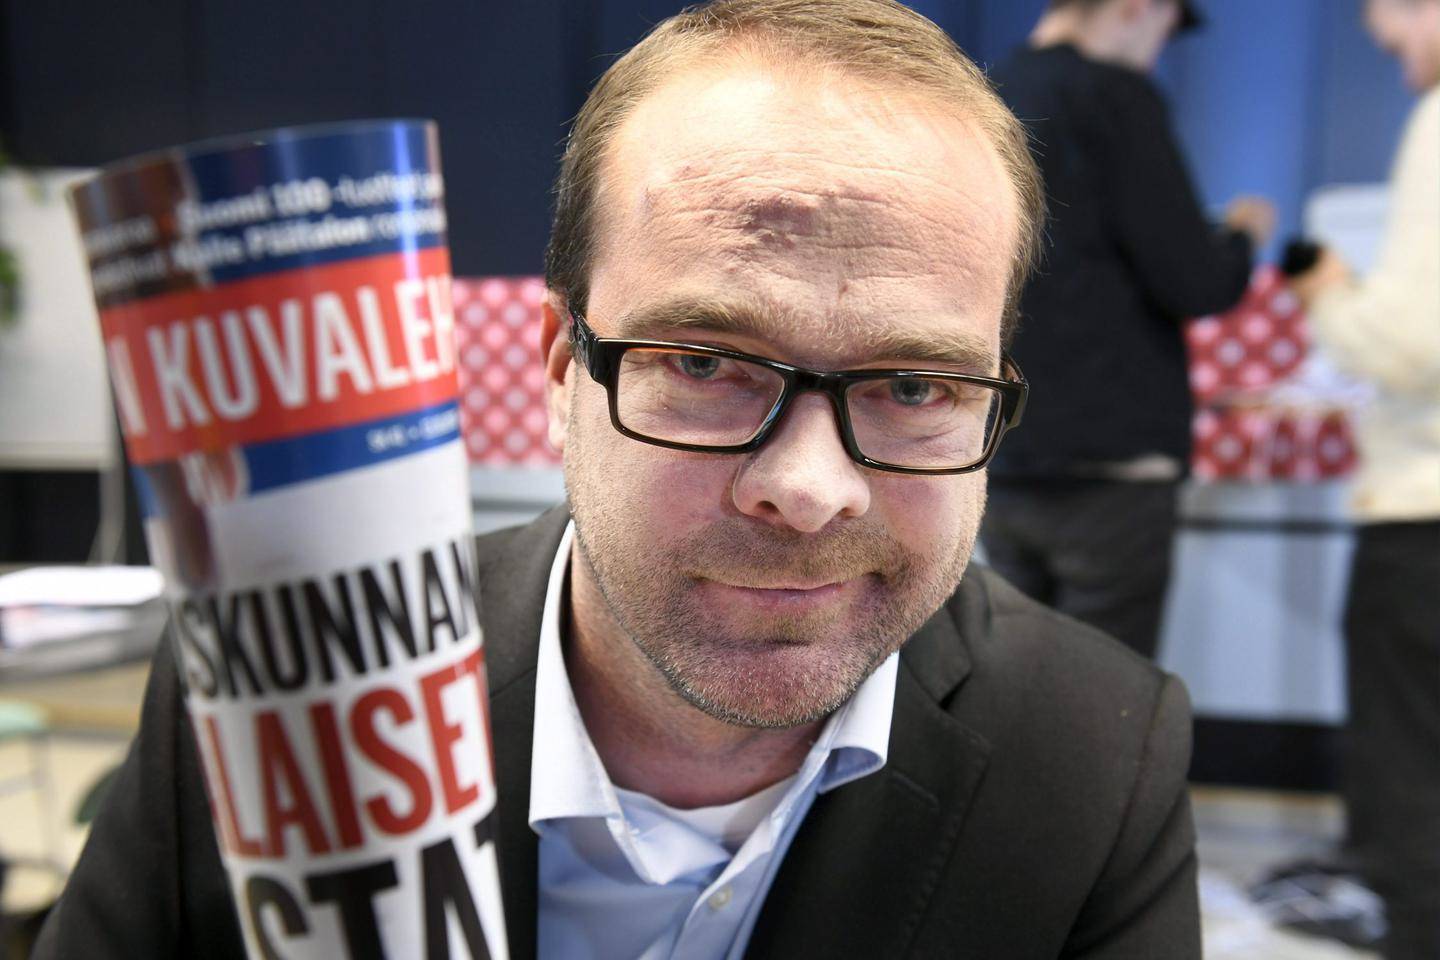 Suomen Kuvalehden päätoimittaja toivoo JSN:n tutkivan puheenjohtajansa  väitteet | Savo | Savon Sanomat